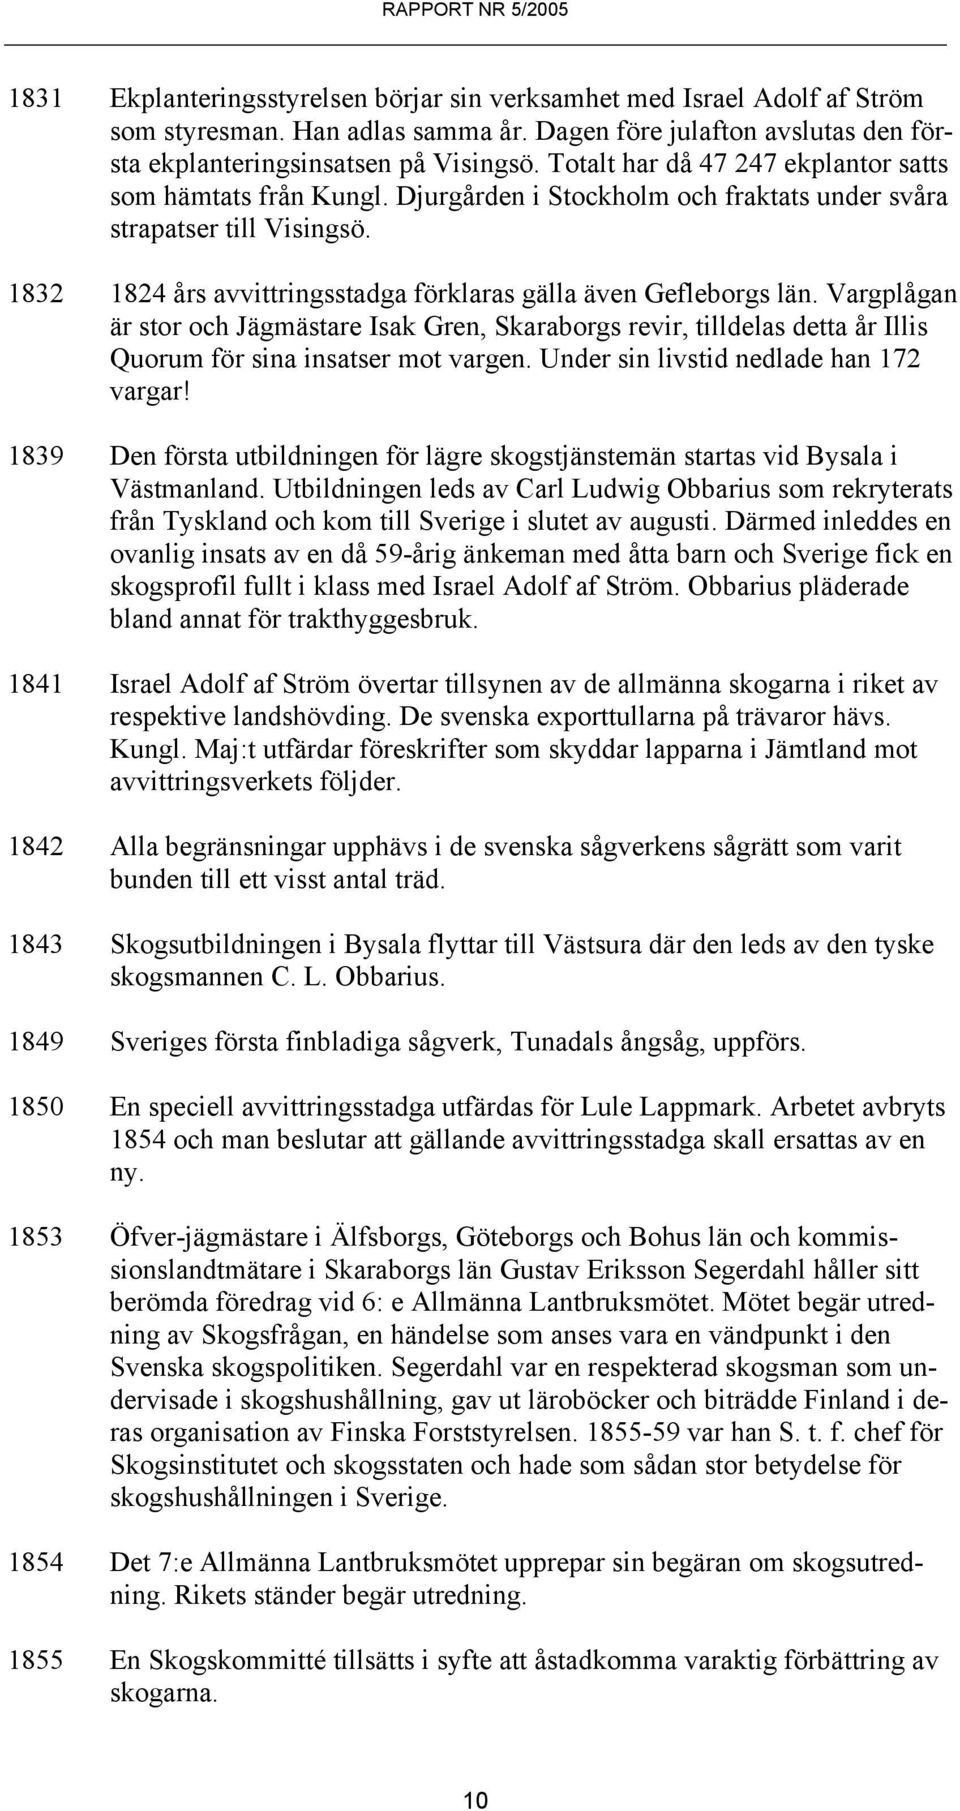 1832 1824 års avvittringsstadga förklaras gälla även Gefleborgs län. Vargplågan är stor och Jägmästare Isak Gren, Skaraborgs revir, tilldelas detta år Illis Quorum för sina insatser mot vargen.